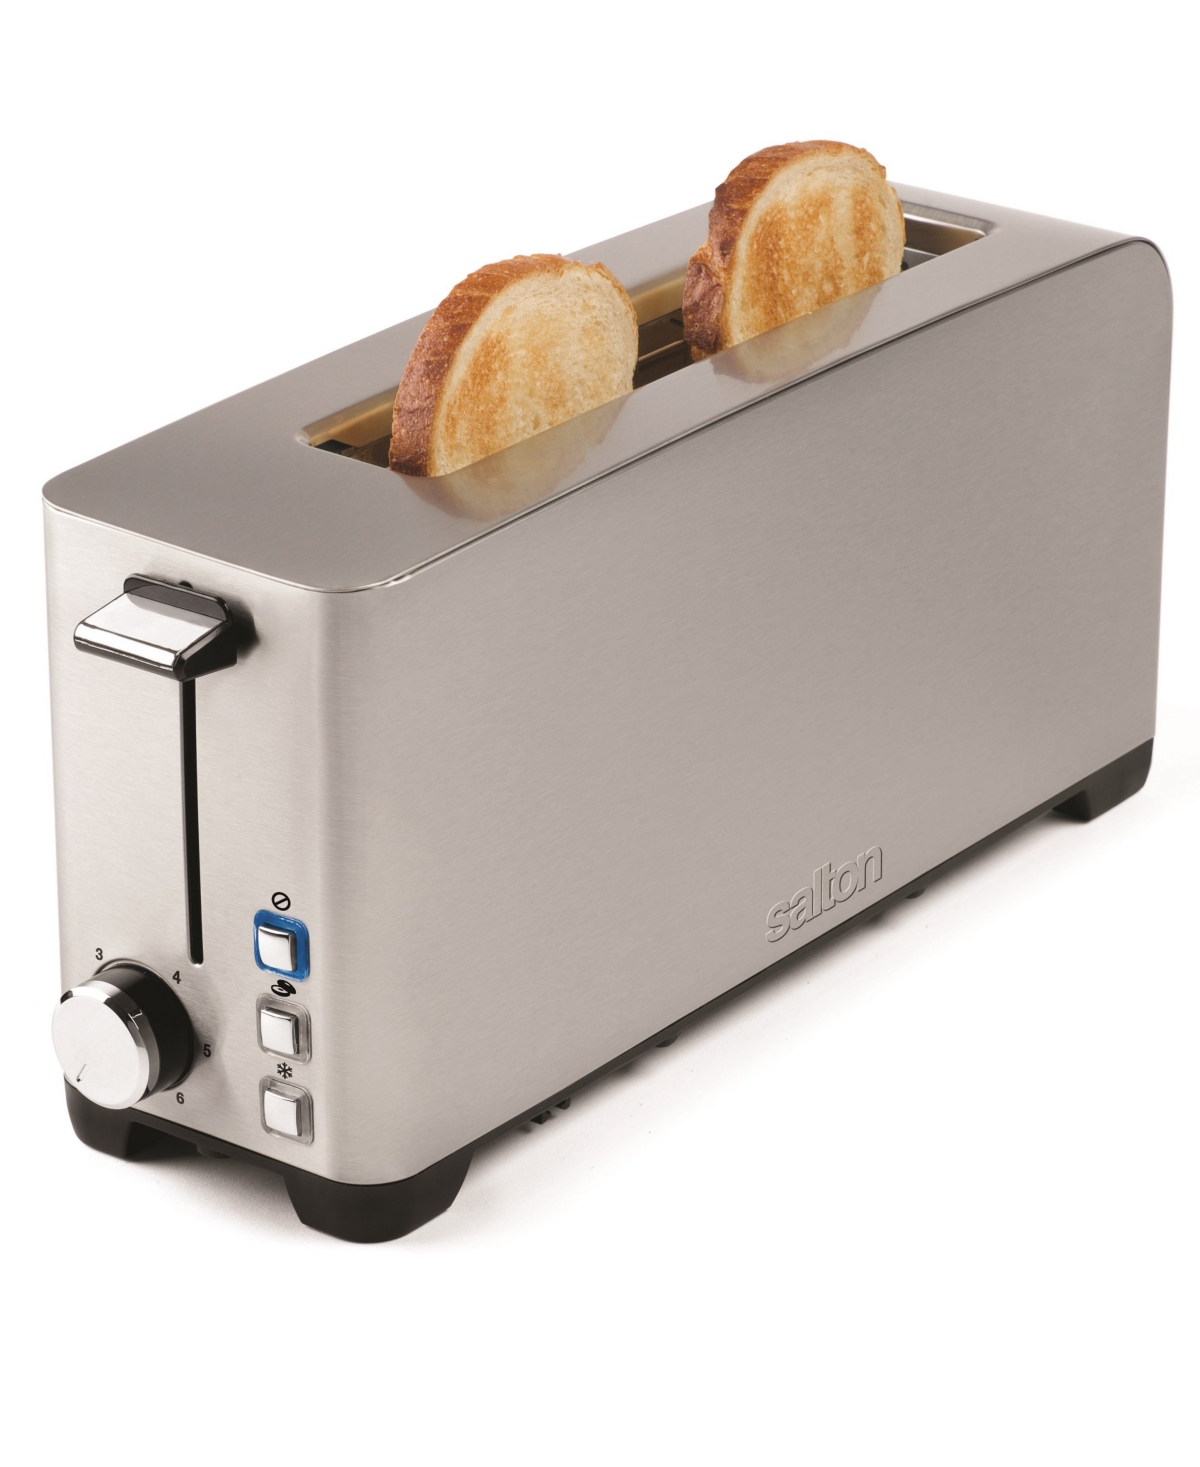 Salton Space Saving Long Slot Toaster